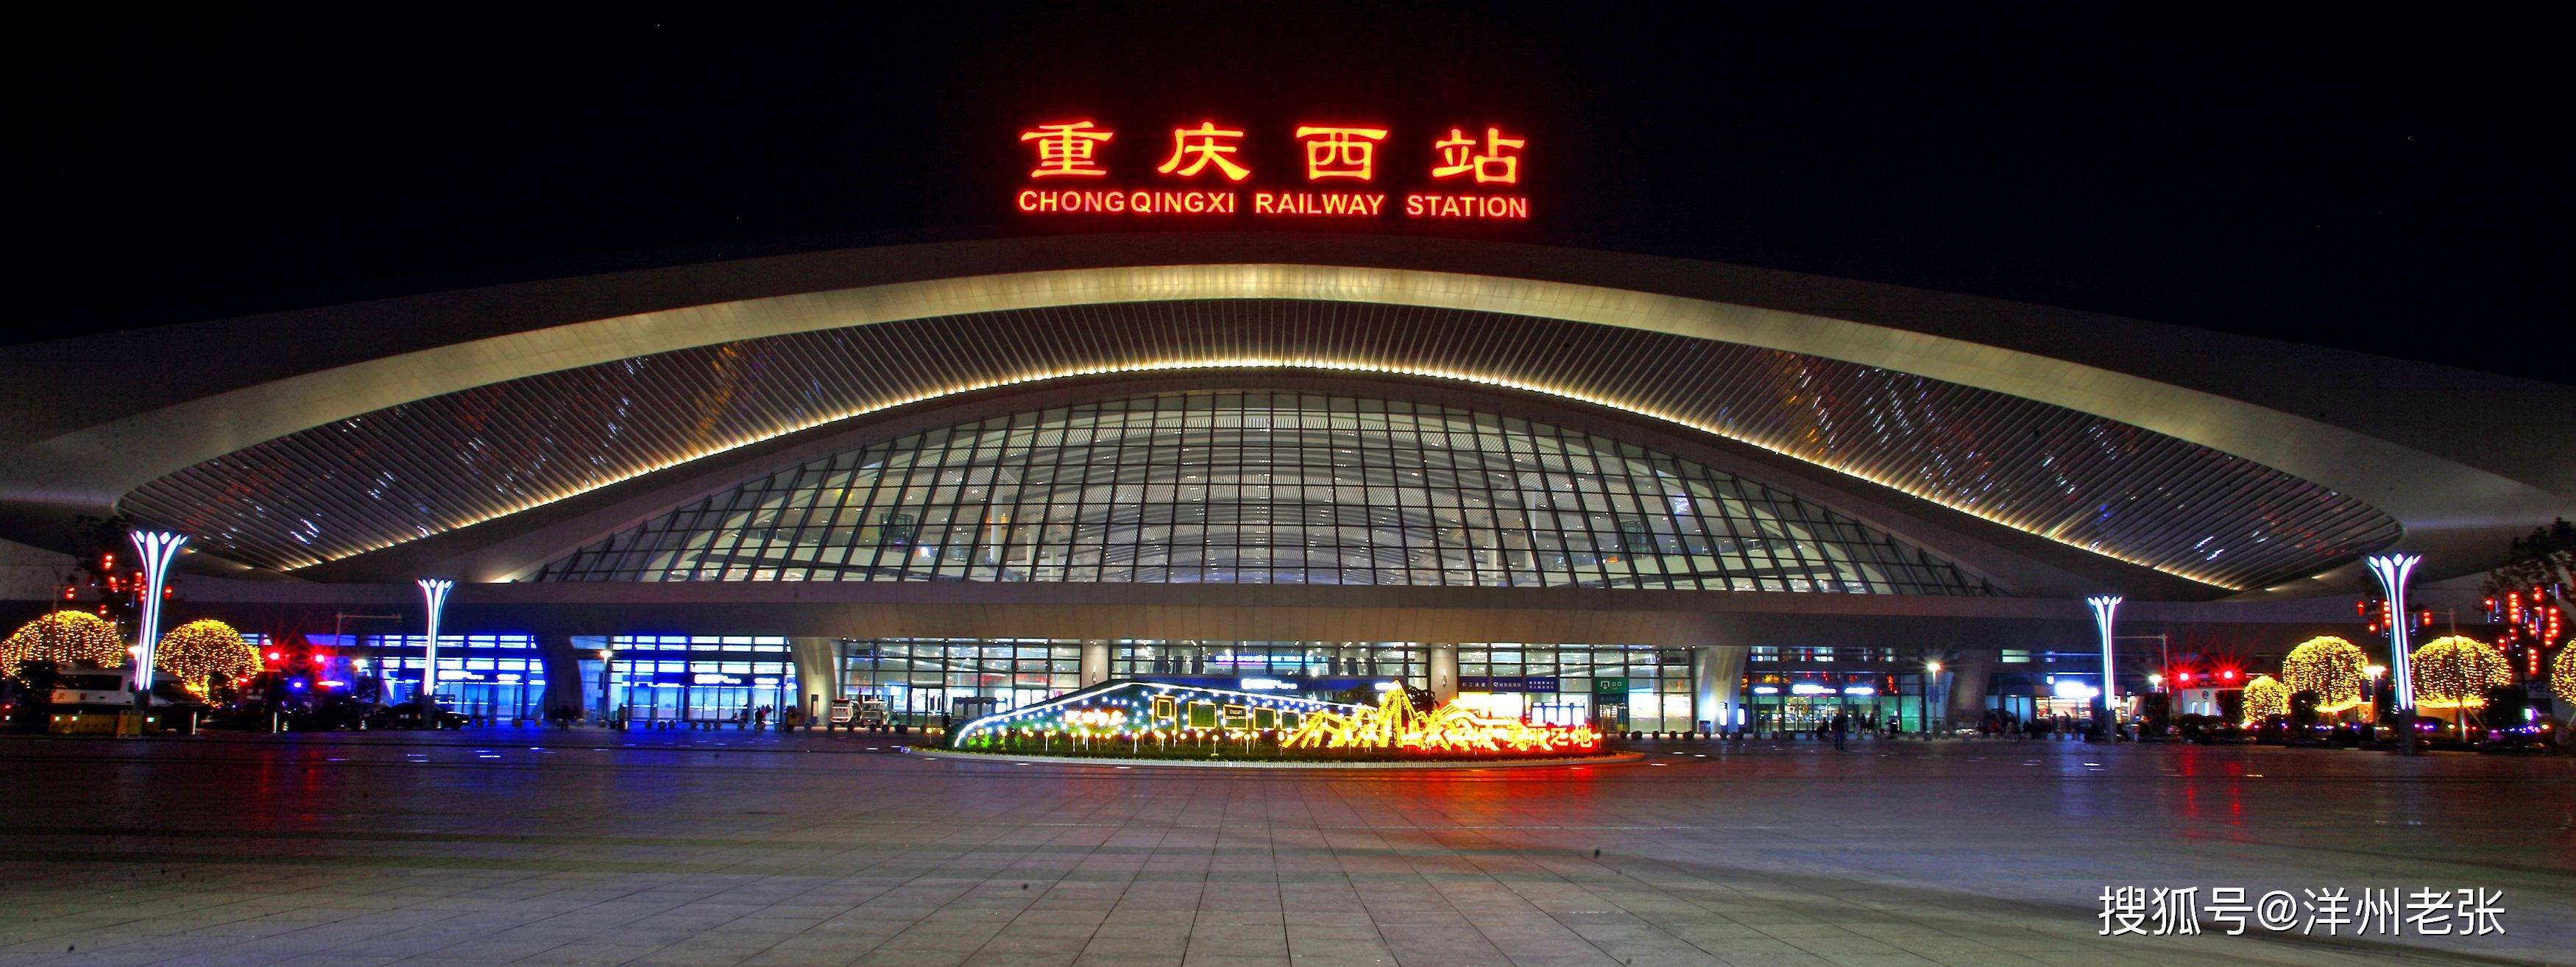 渝西高铁又称渝西客运专线,北起陕西省西安市,南至重庆市,连通陕西